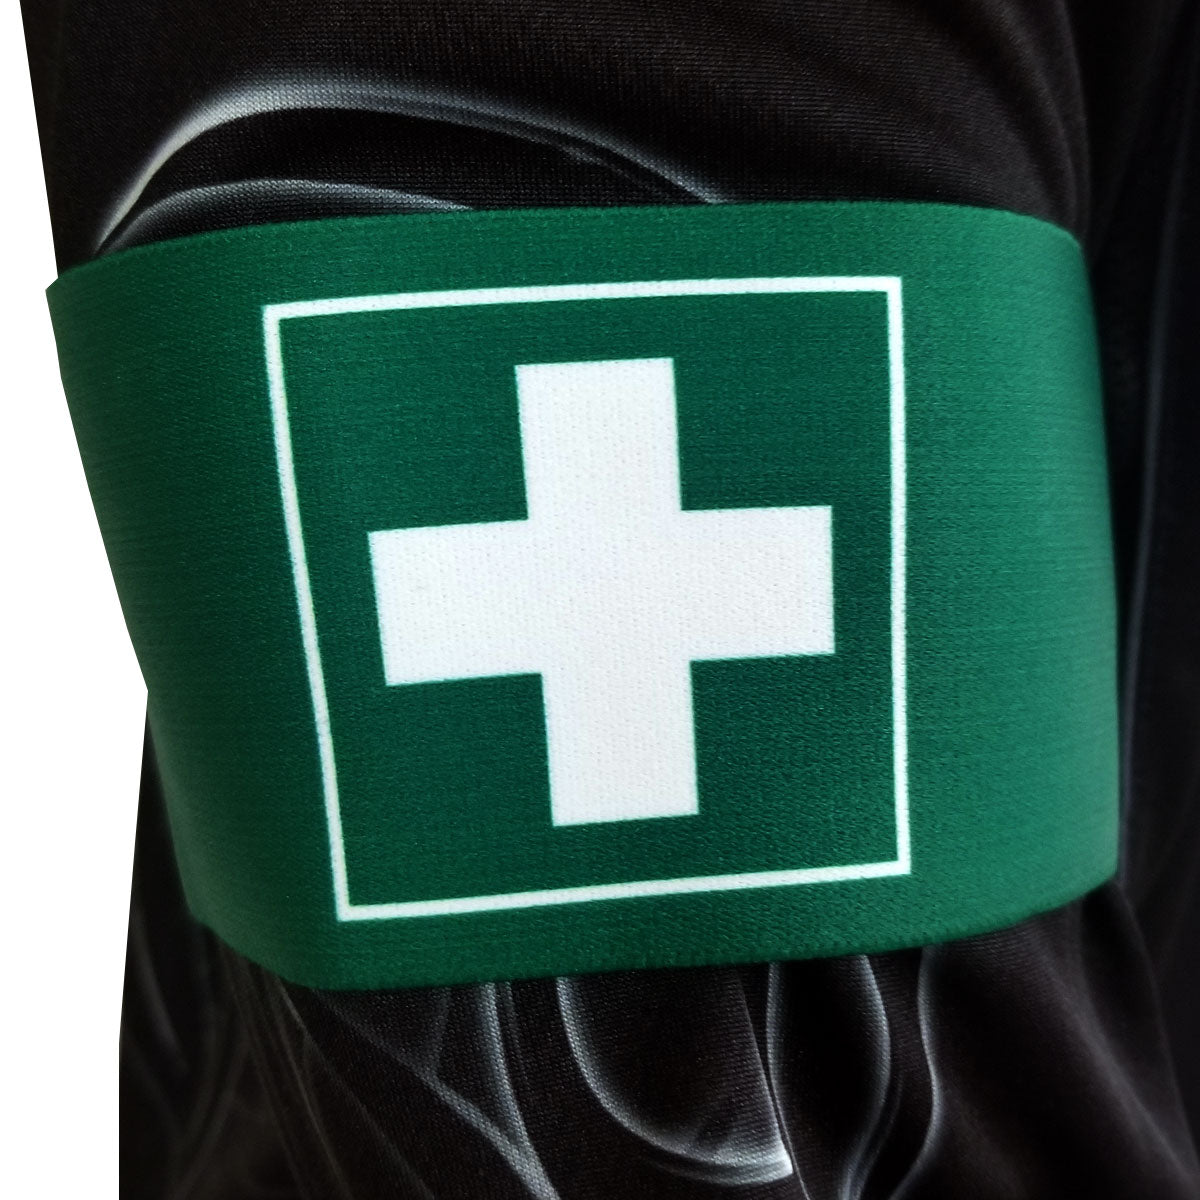 VelcroÂ® Paintball Team Armband, First Aid | Paintball Armband | Social Paintball